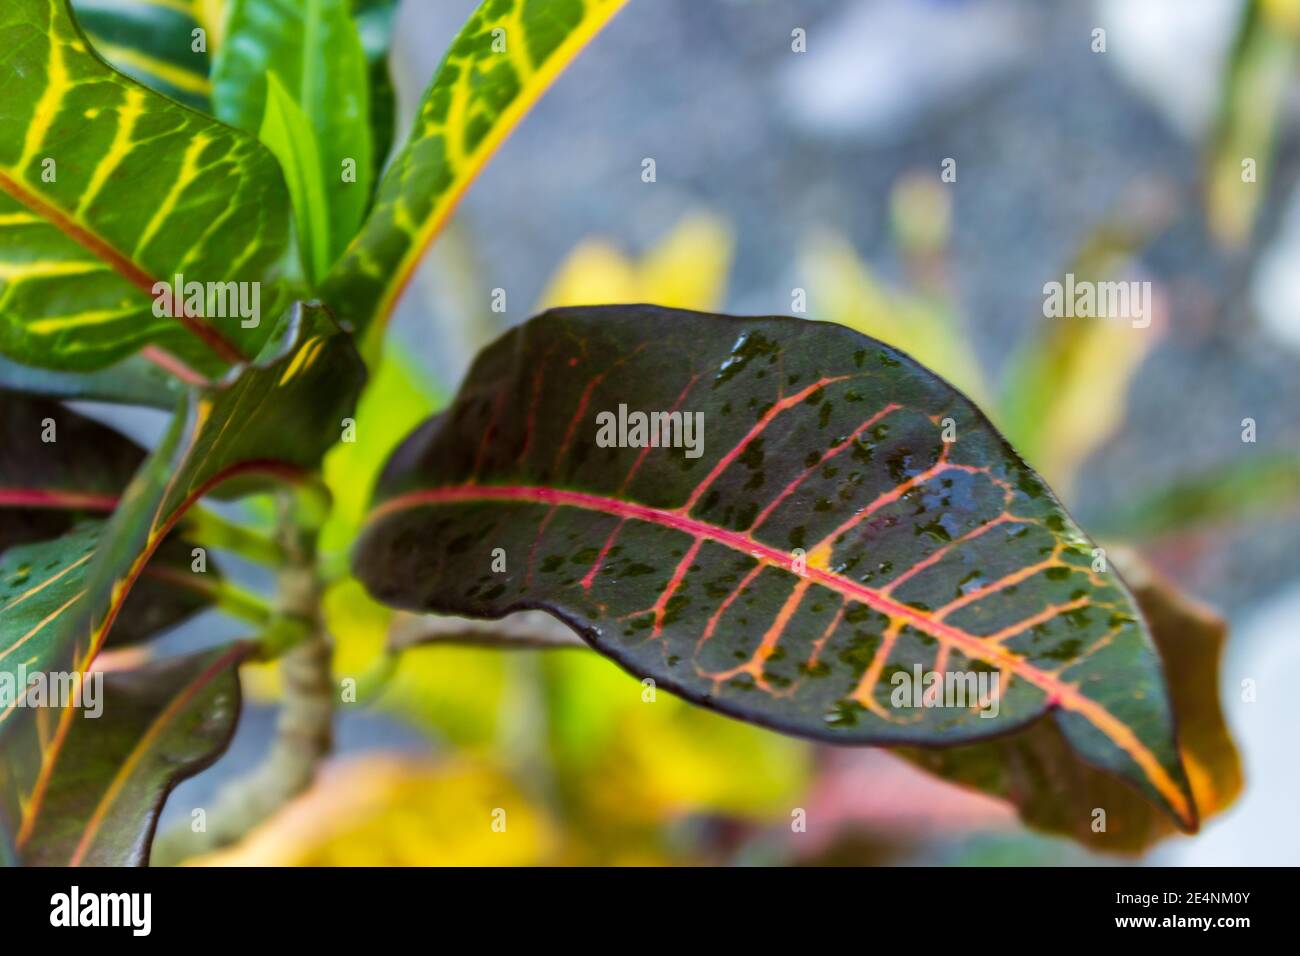 Gros plan de la pluie feuille humide d'un Laurier variégé, codiaeum variegatum, les veines rose et jaune se distinguent contre la feuille vert foncé. Banque D'Images